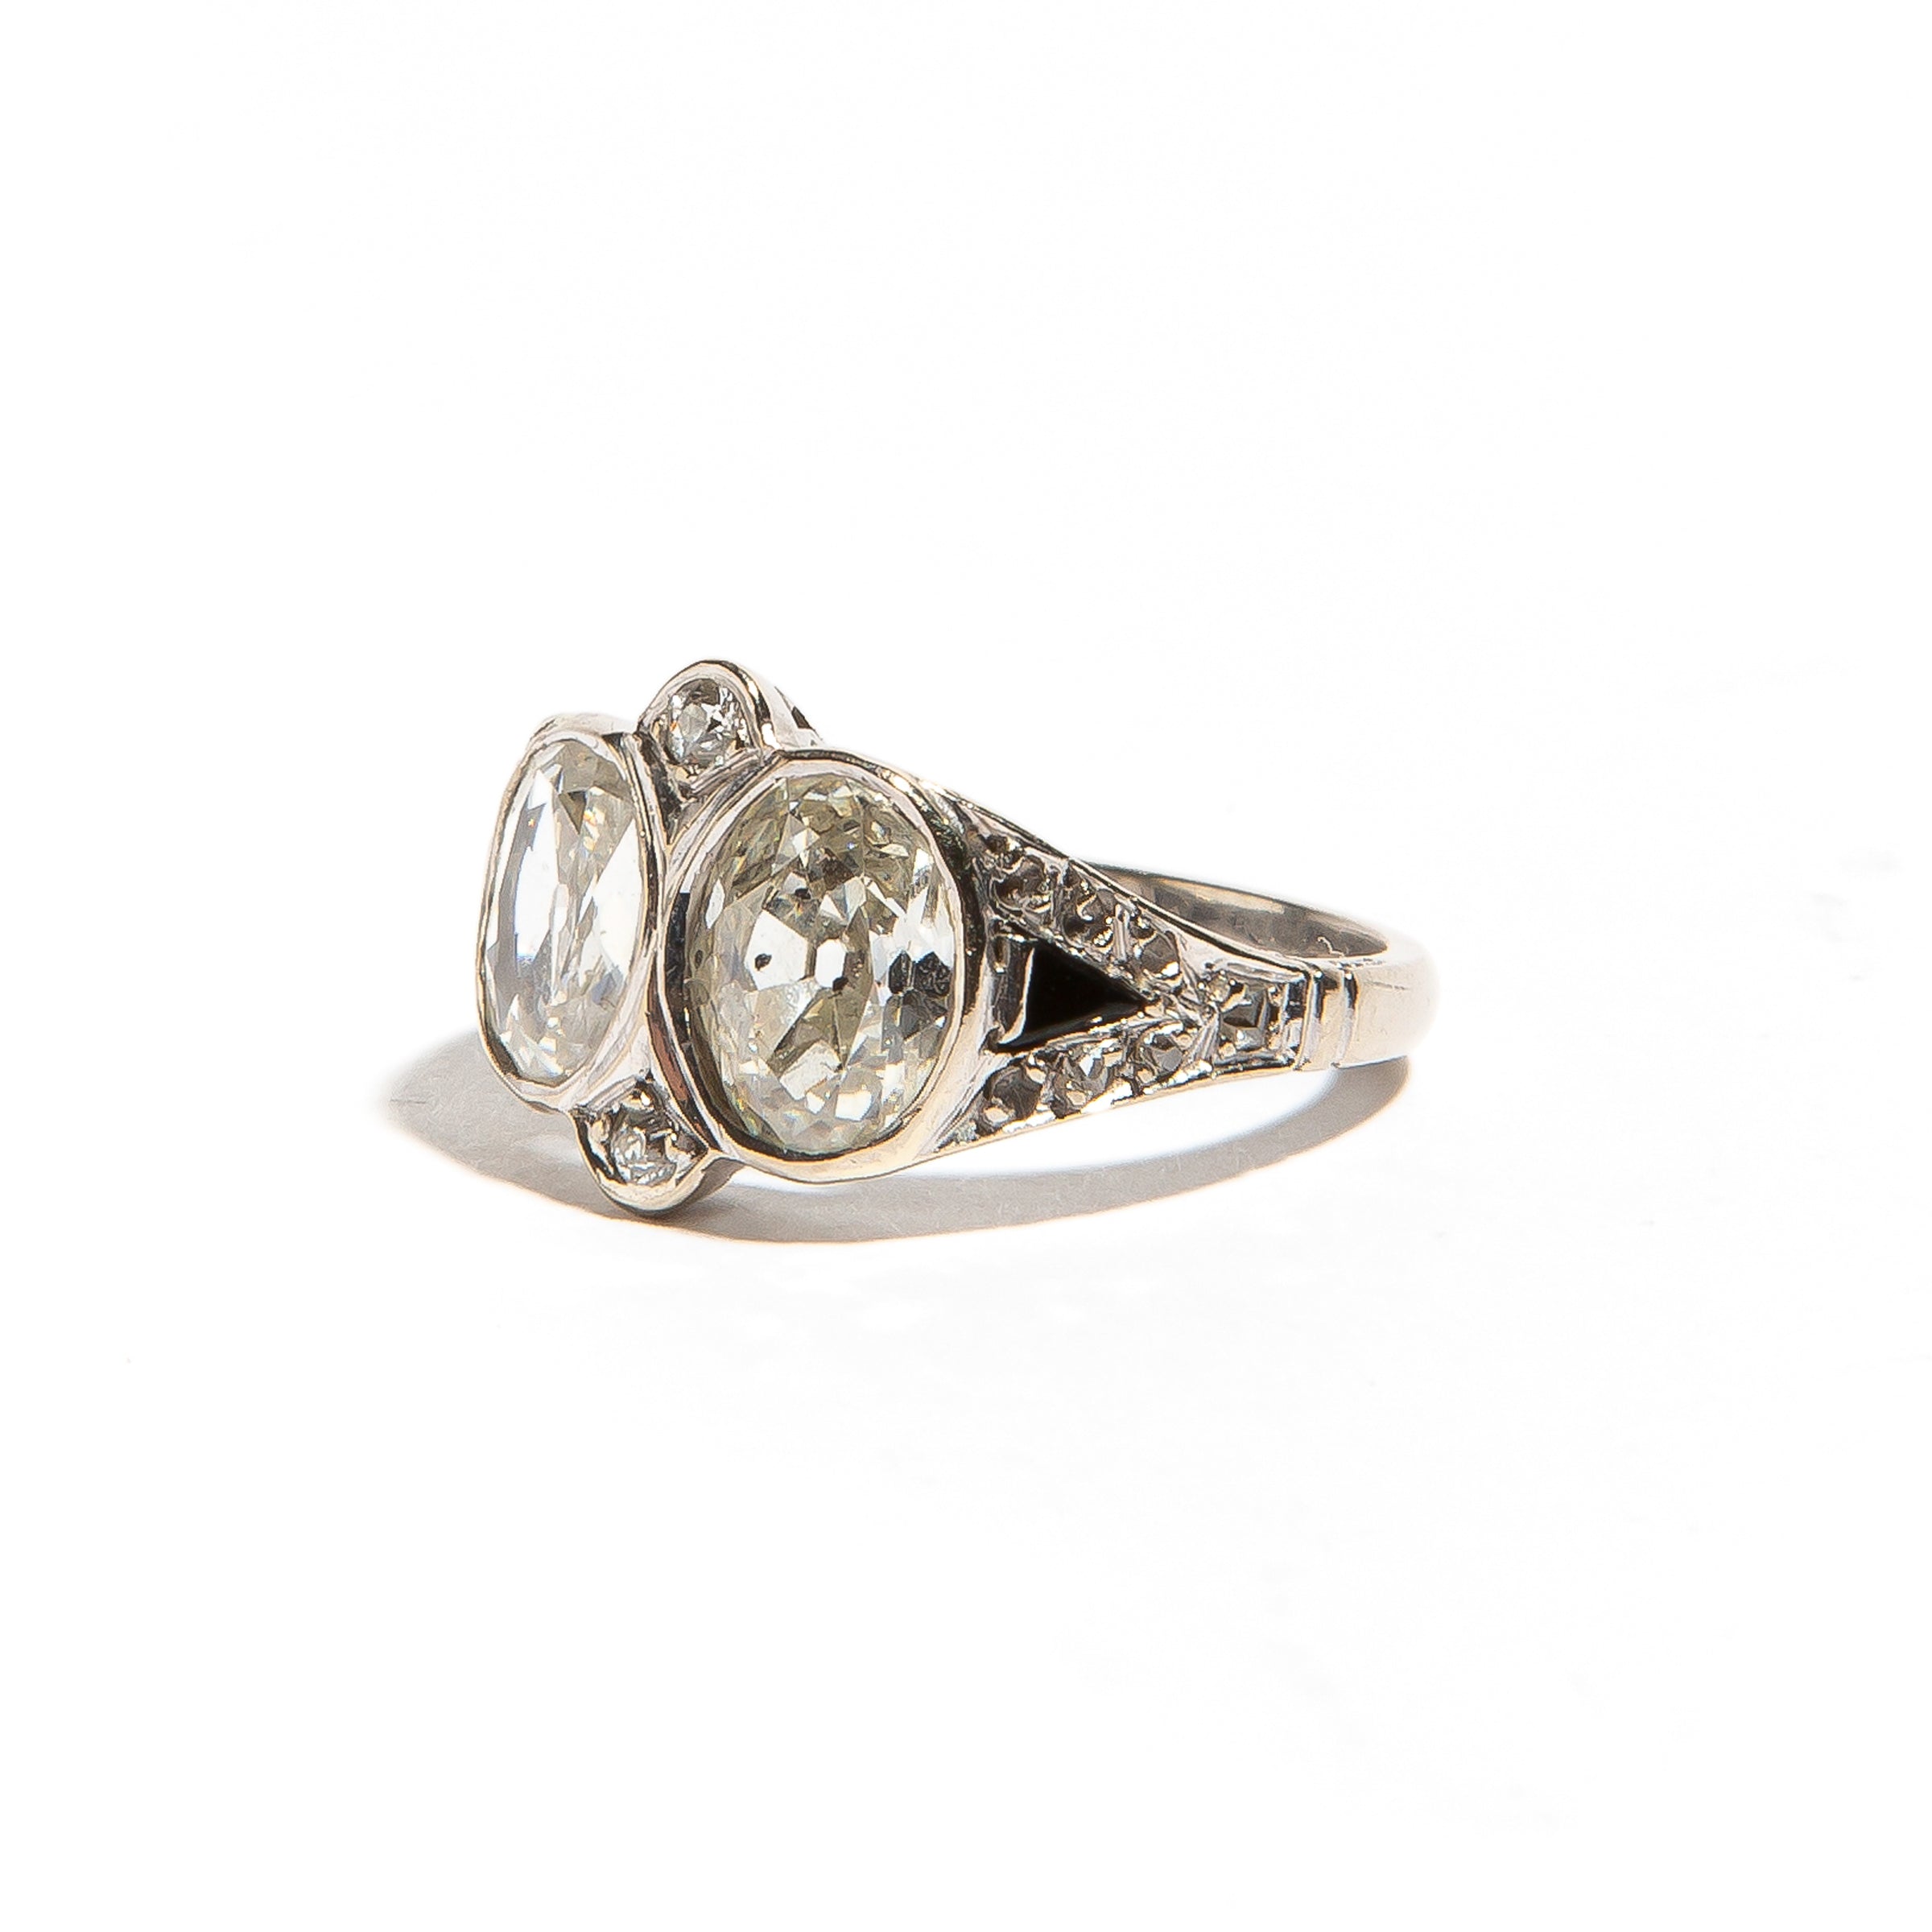 ESTELLE: White Gold Diamond and Onyx Ring